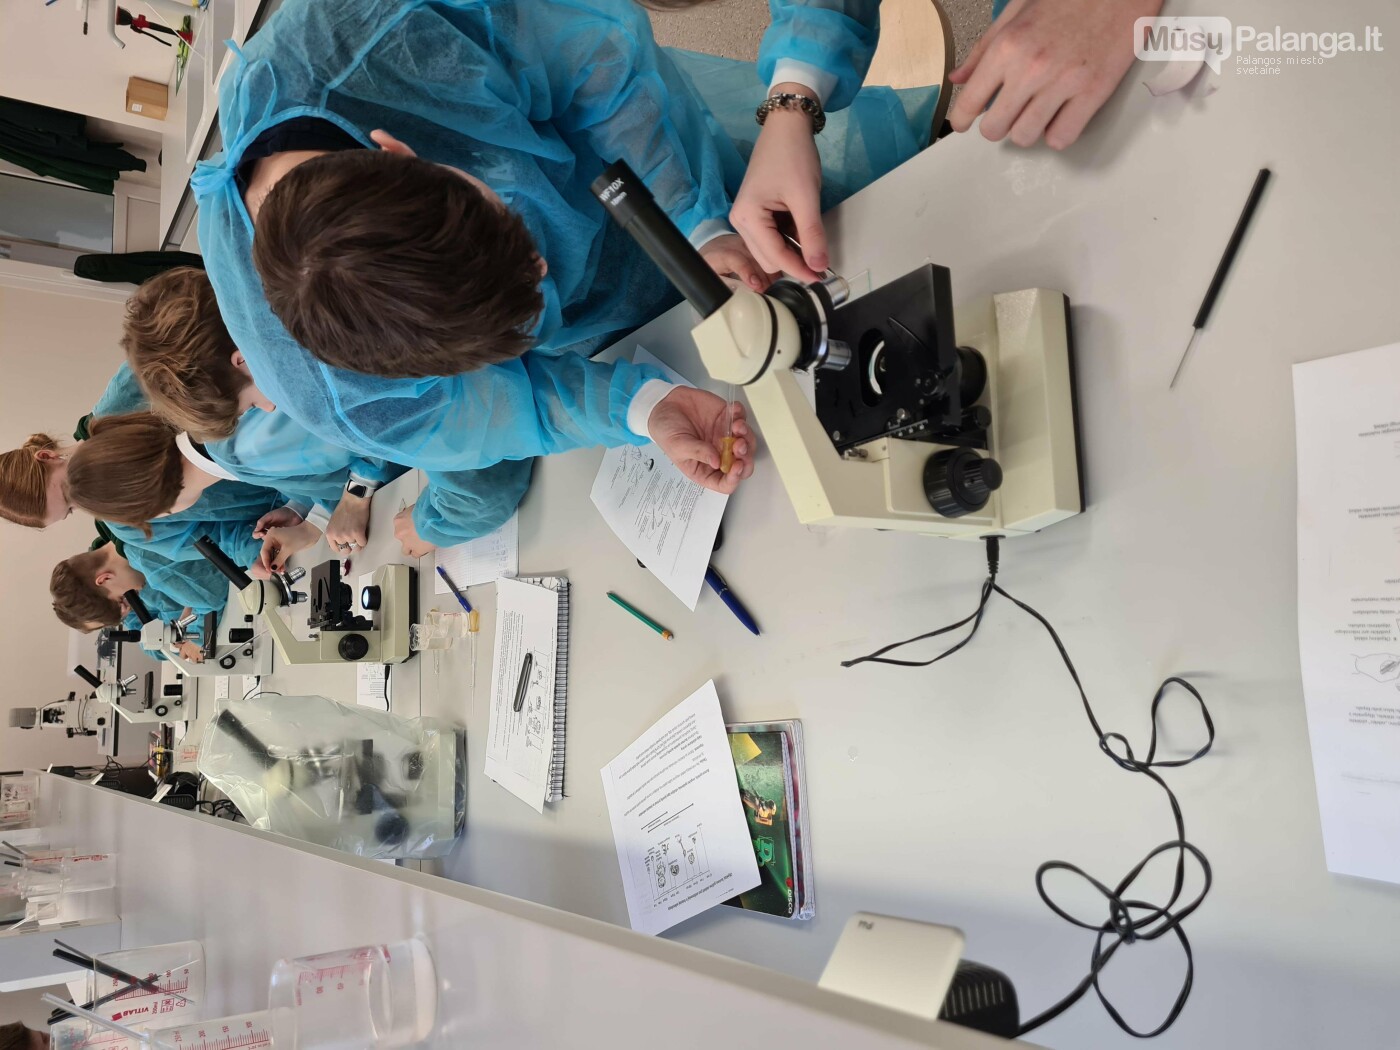 Ąžuolyno gimnazijos auklėtiniai mokosi moderniai įrengtoje biotechnologijų laboratorijoje.